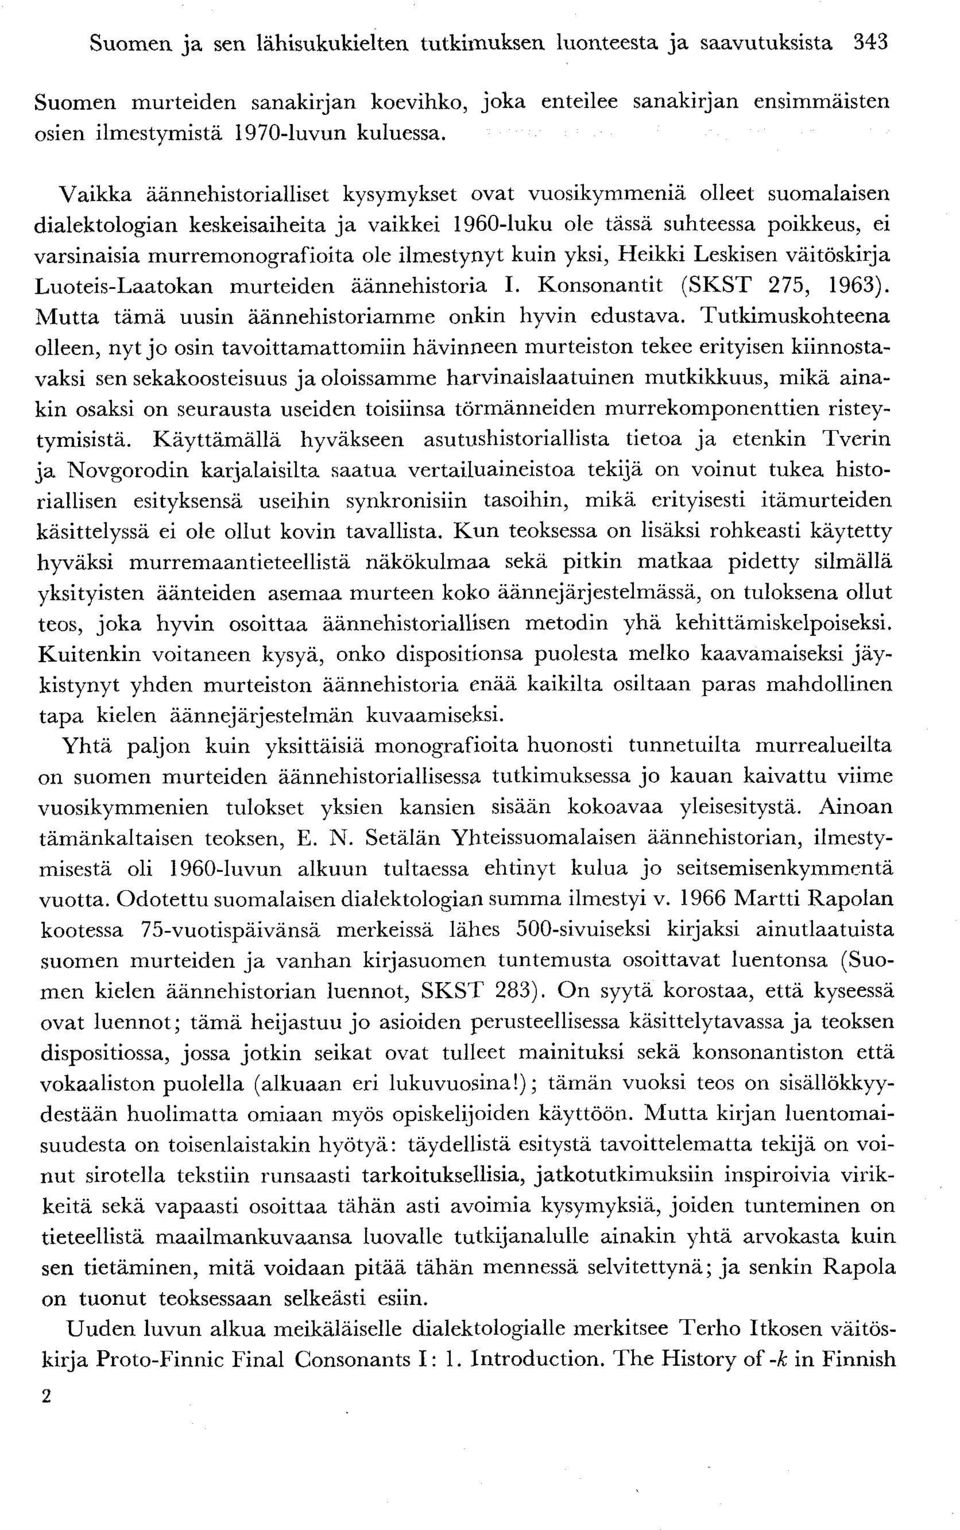 murremonografioita ole ilmestynyt kuin yksi, Heikki Leskisen väitöskirja Luoteis-Laatokan murteiden äännehistoria I. Konsonantit (SKST 275, 1963).